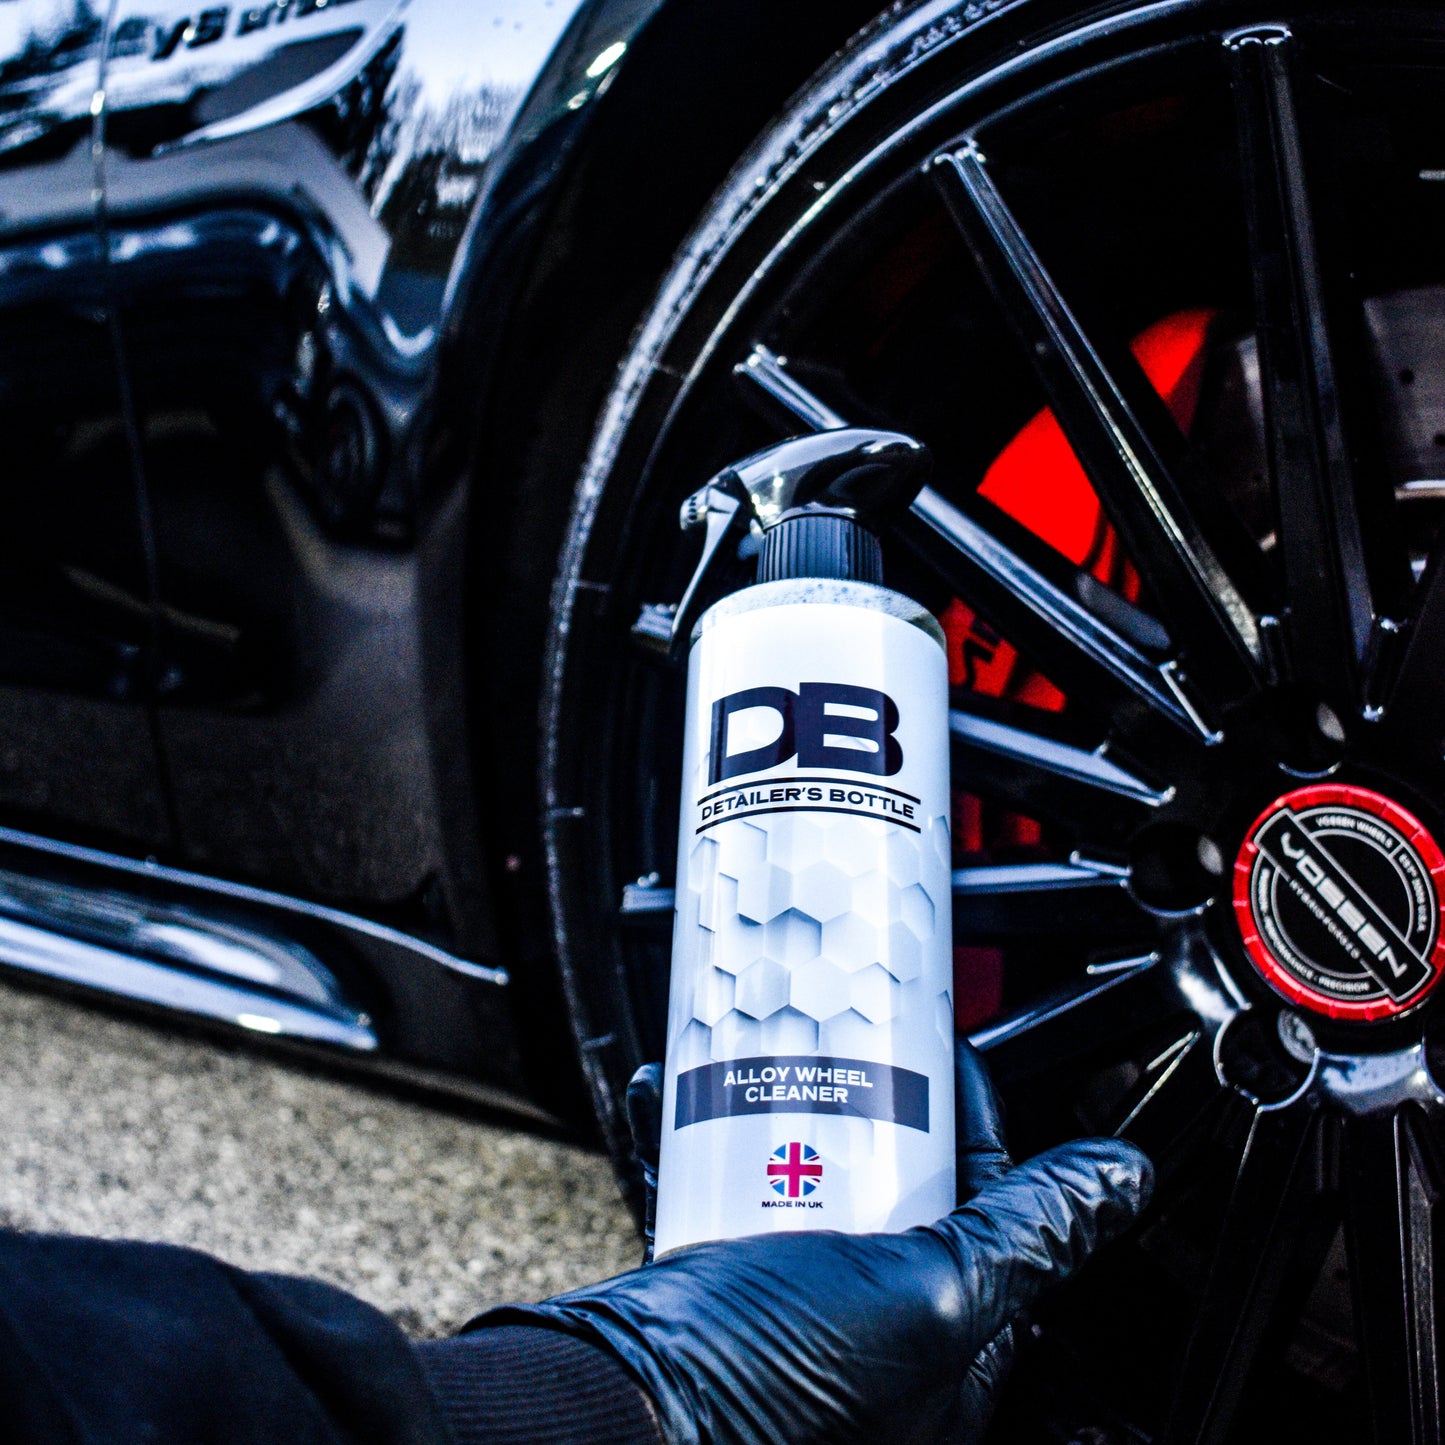 DB | Detailer's Bottle Alloy Wheel Cleaner 500ml